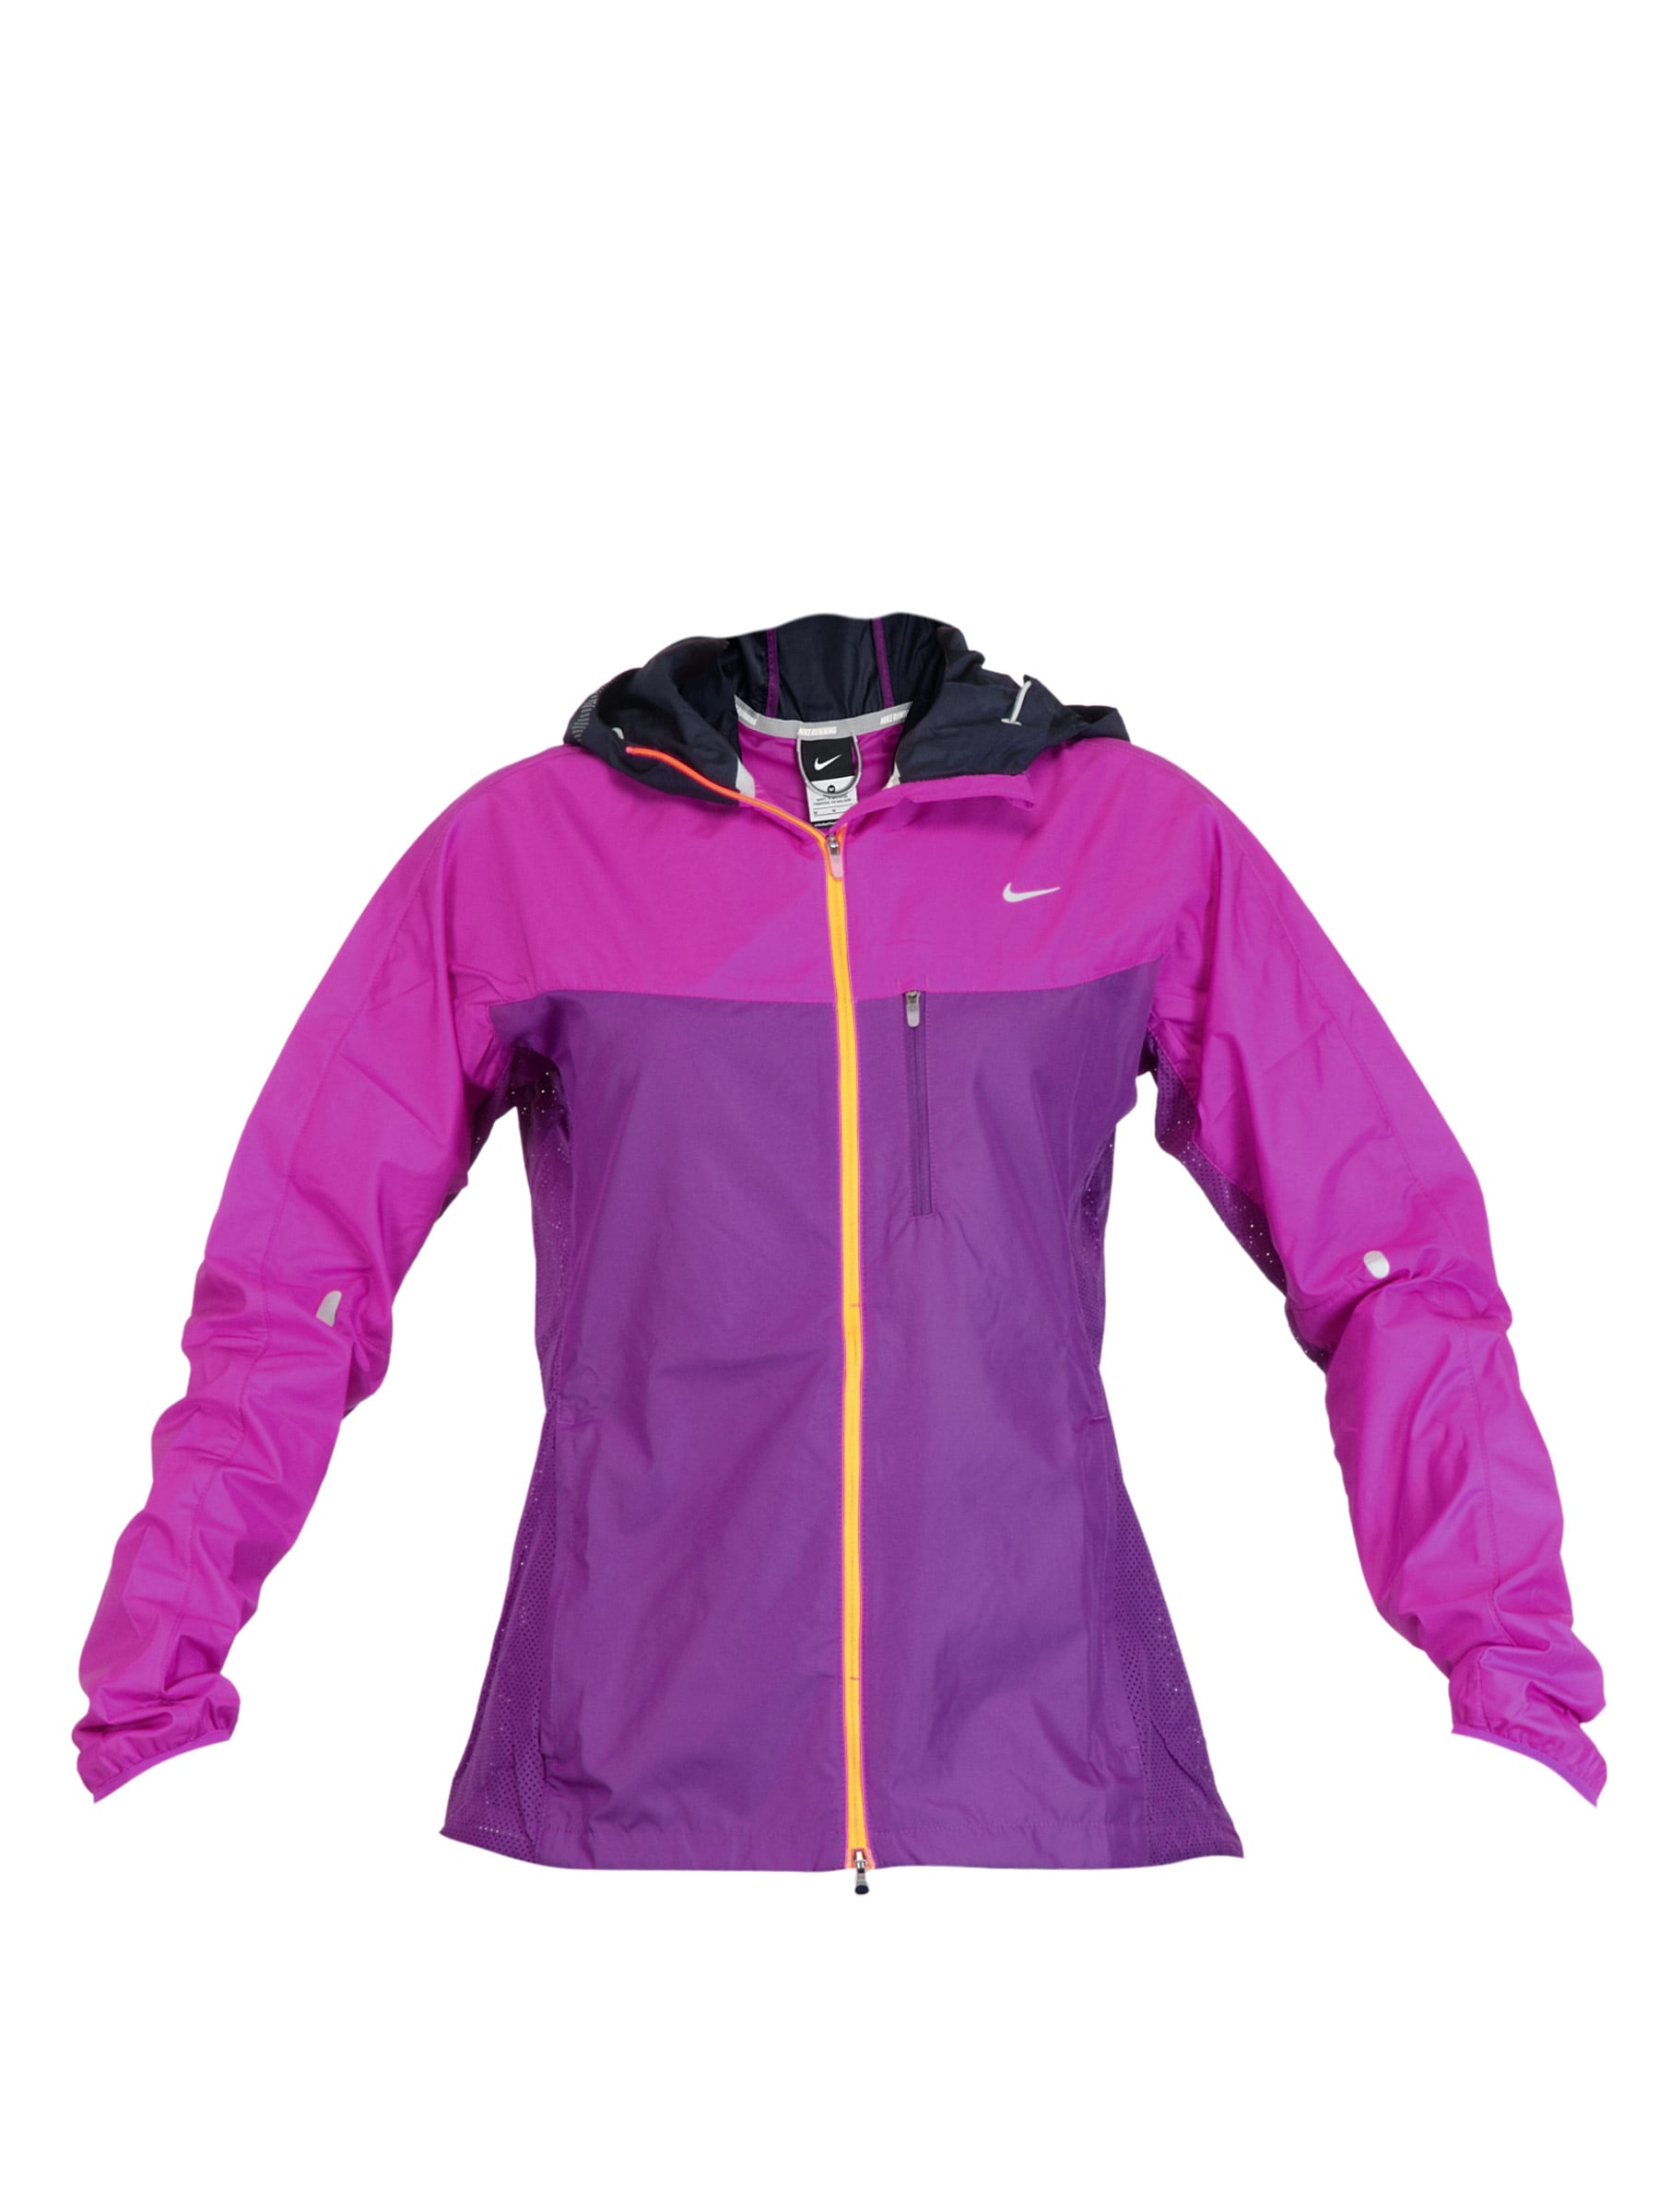 Nike Women Vapor Purple Jacket